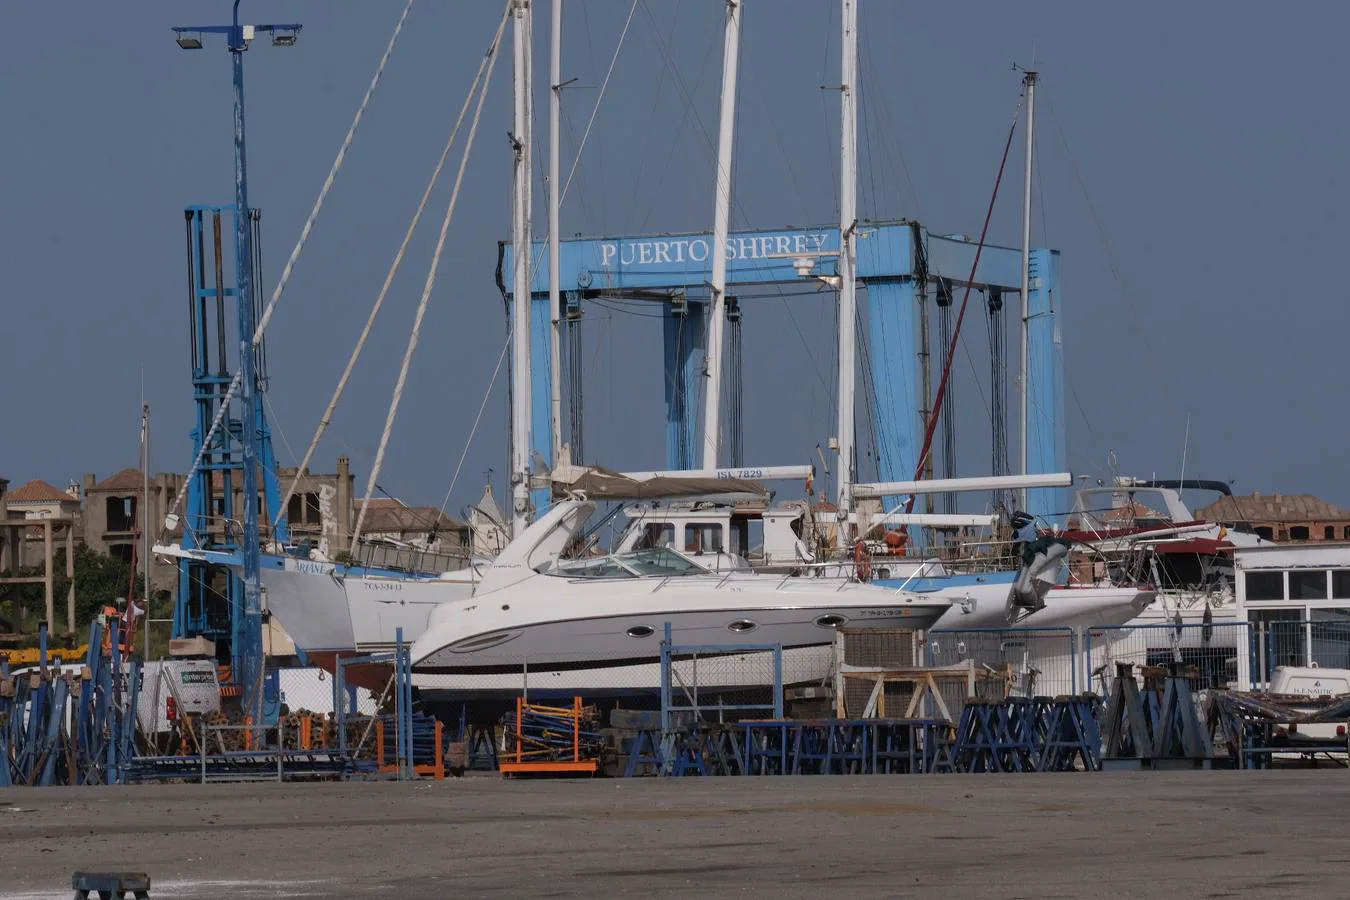 FOTOS: Varios veleros han tenido que pasar por el varadero de Puerto Sherry tras su contacto con las orcas